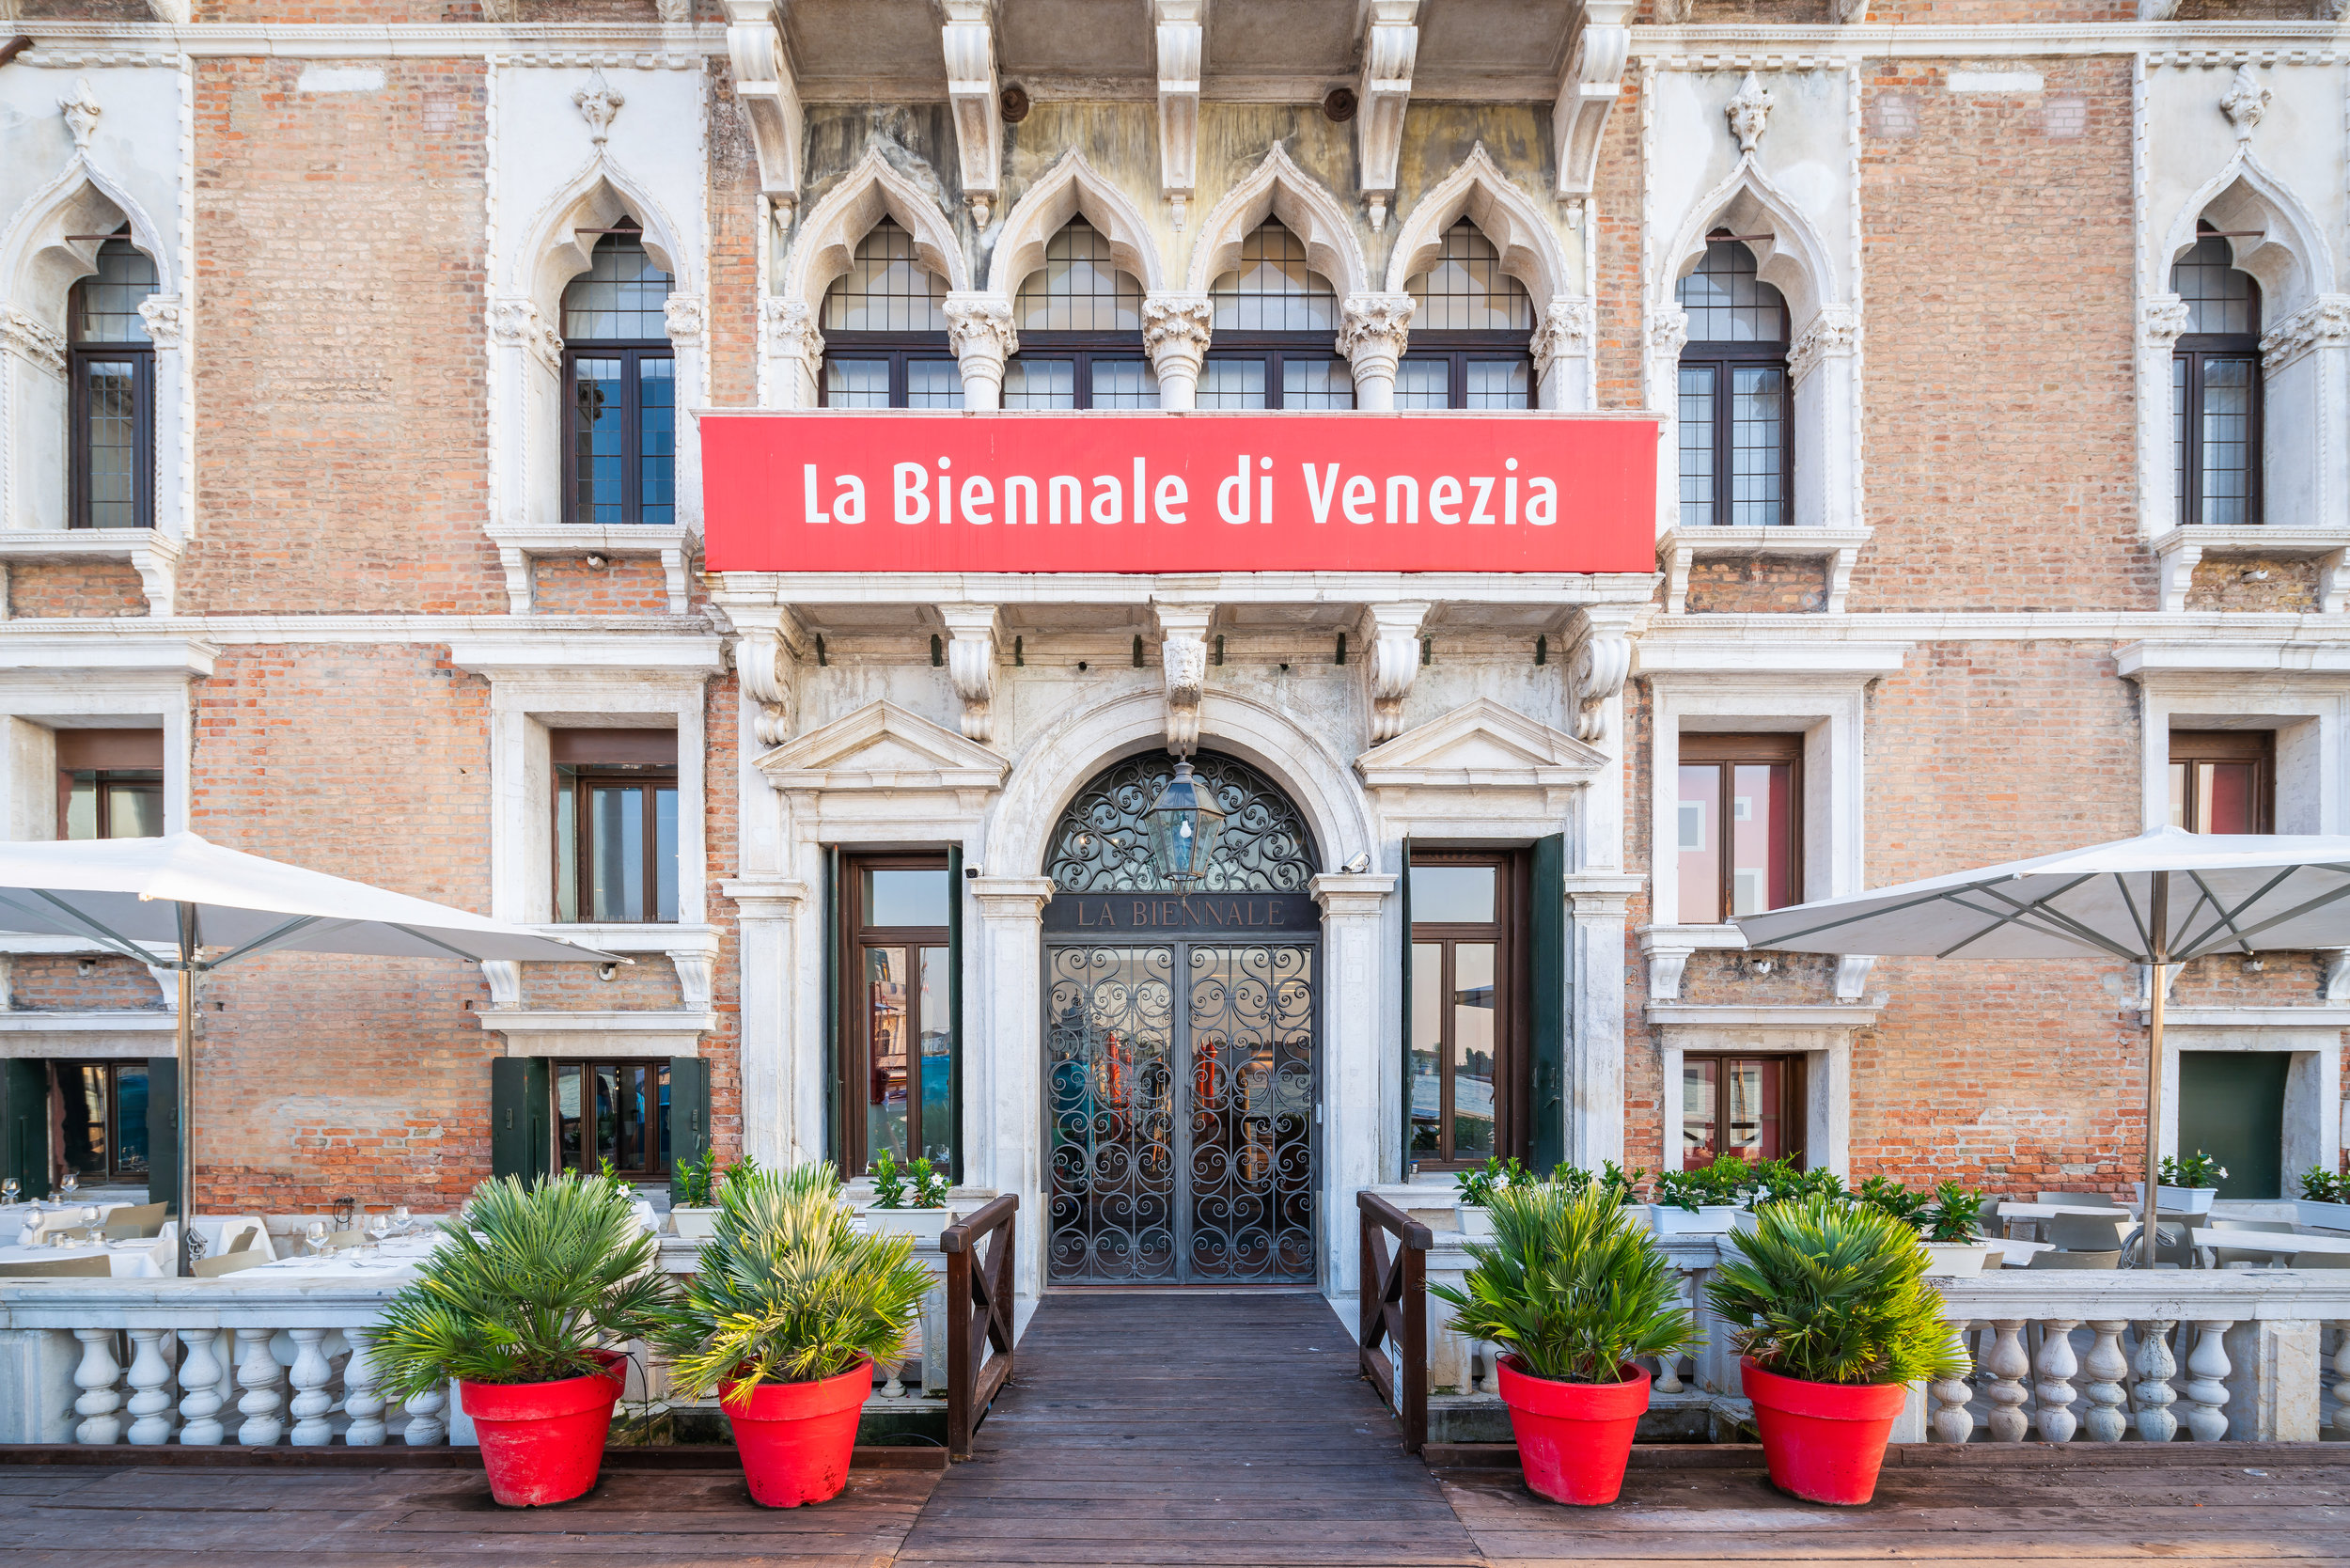 La Biennale of Venice — Ombra del Leone Ristorante